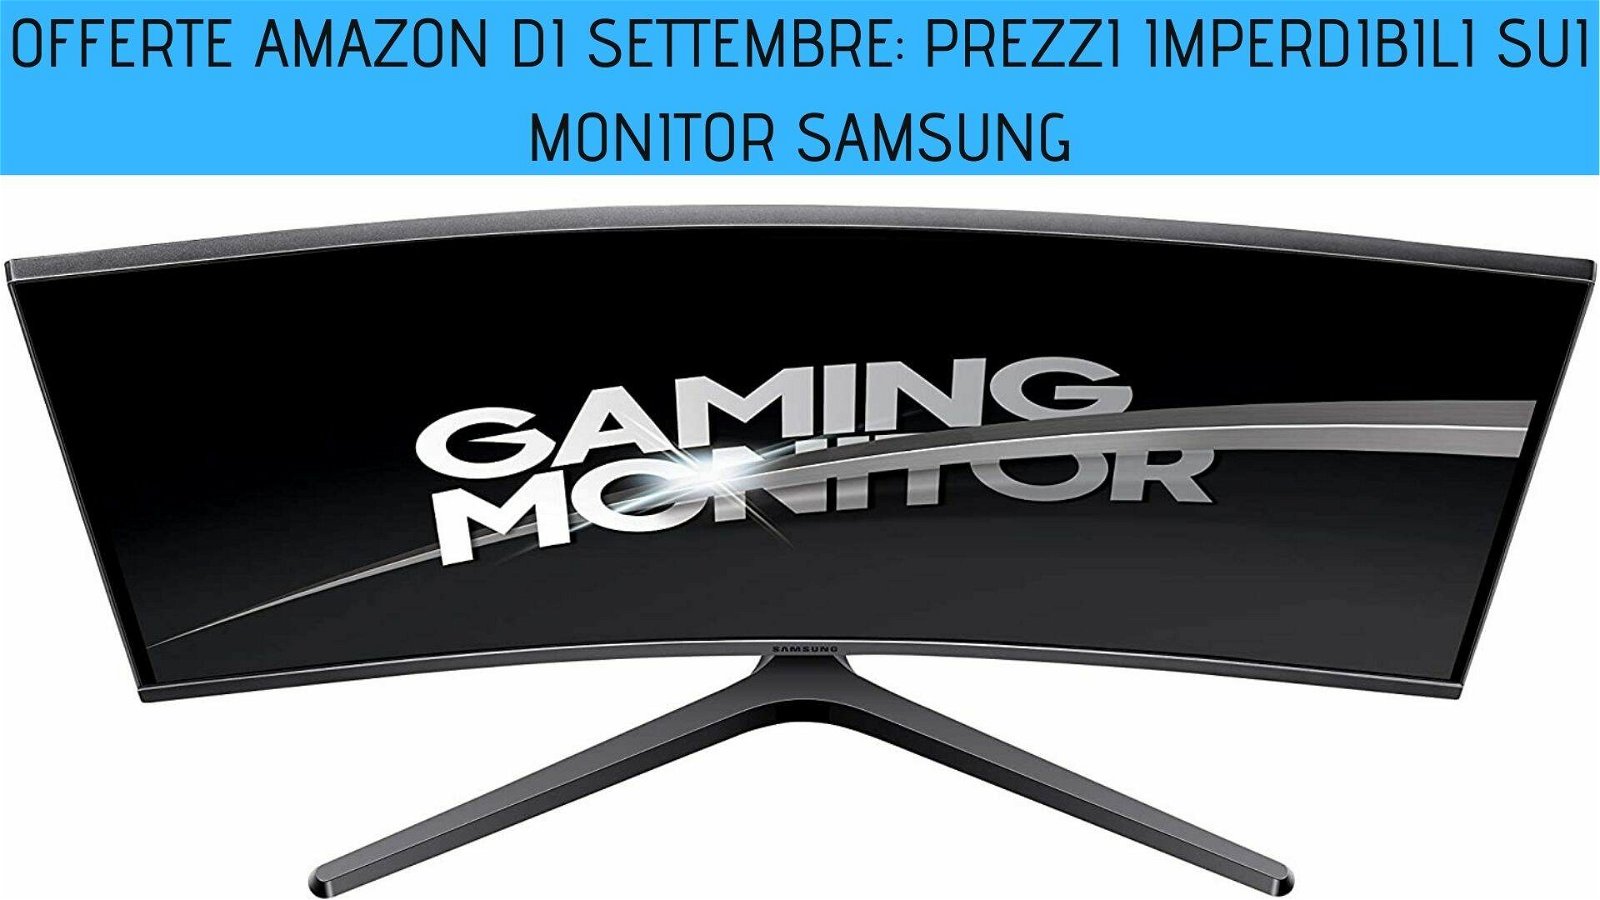 Immagine di Offerte Amazon di settembre: prezzi imperdibili sui monitor Samsung